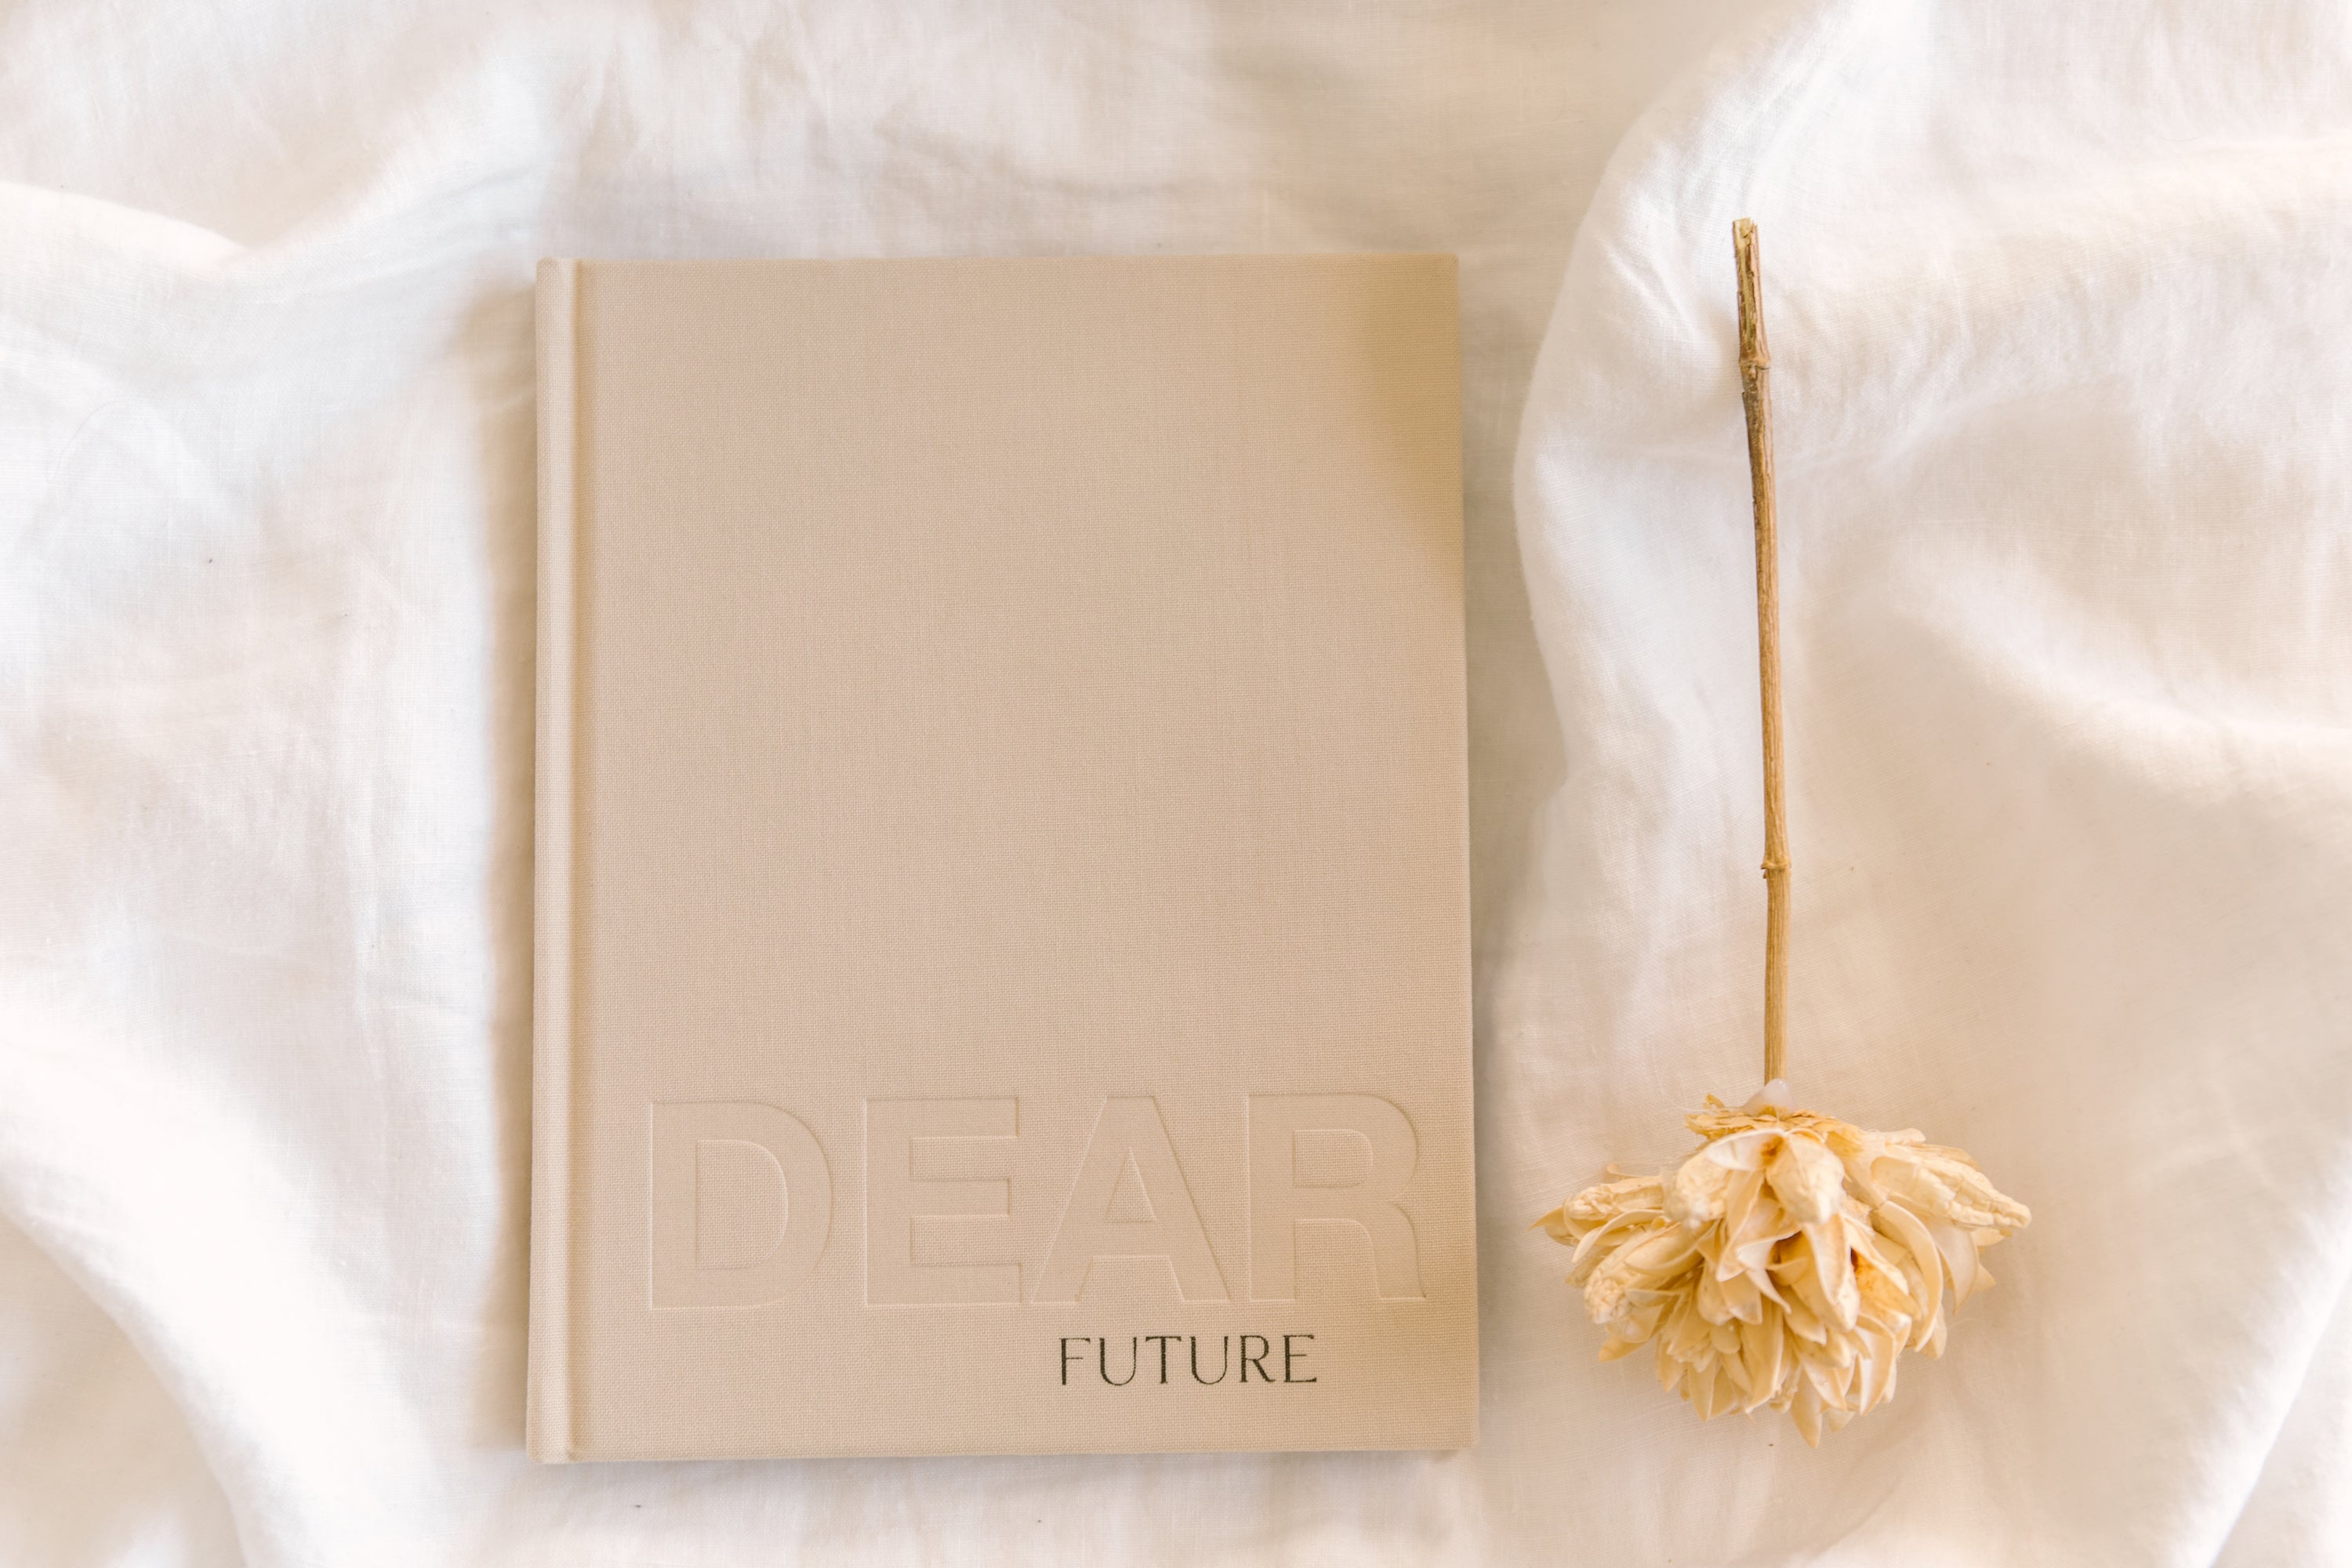 dear journal